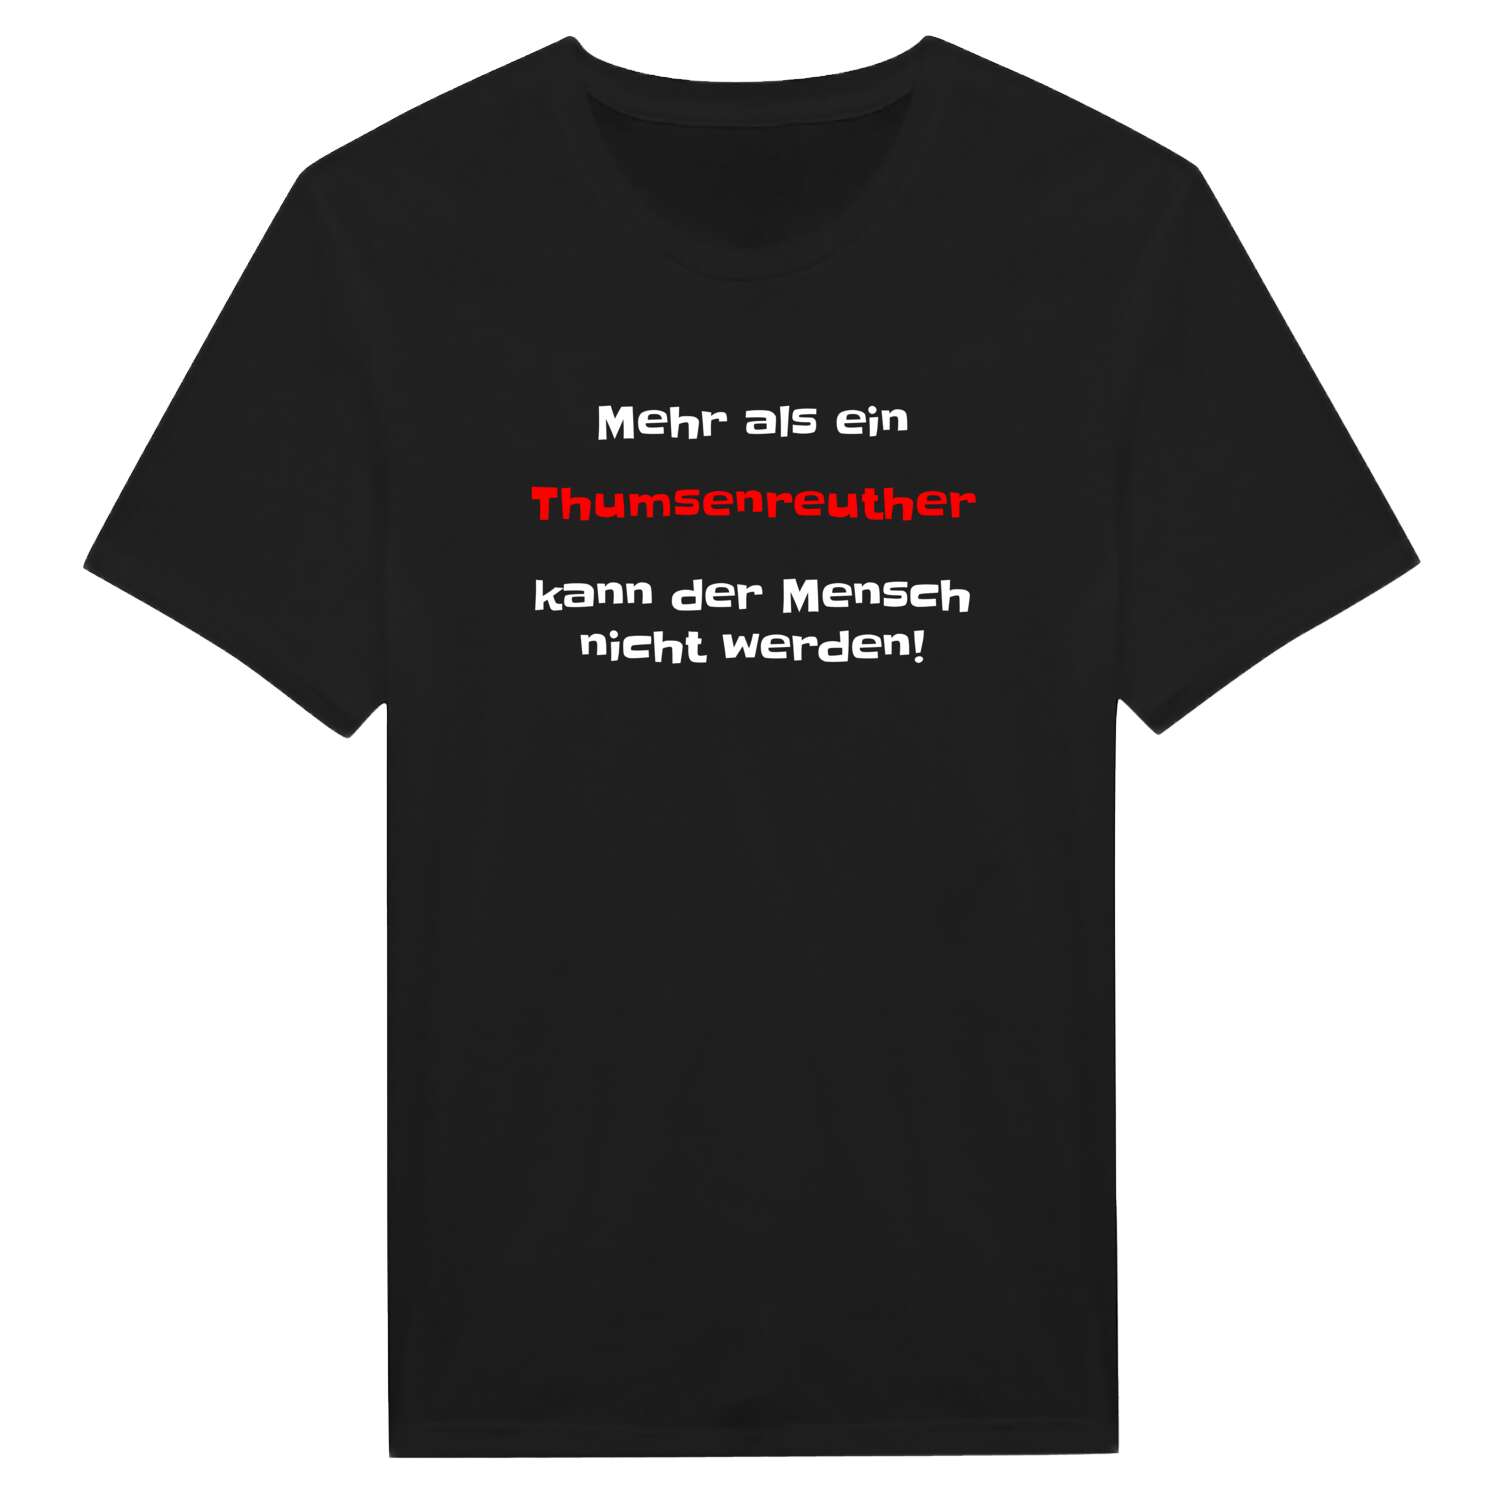 Thumsenreuth T-Shirt »Mehr als ein«